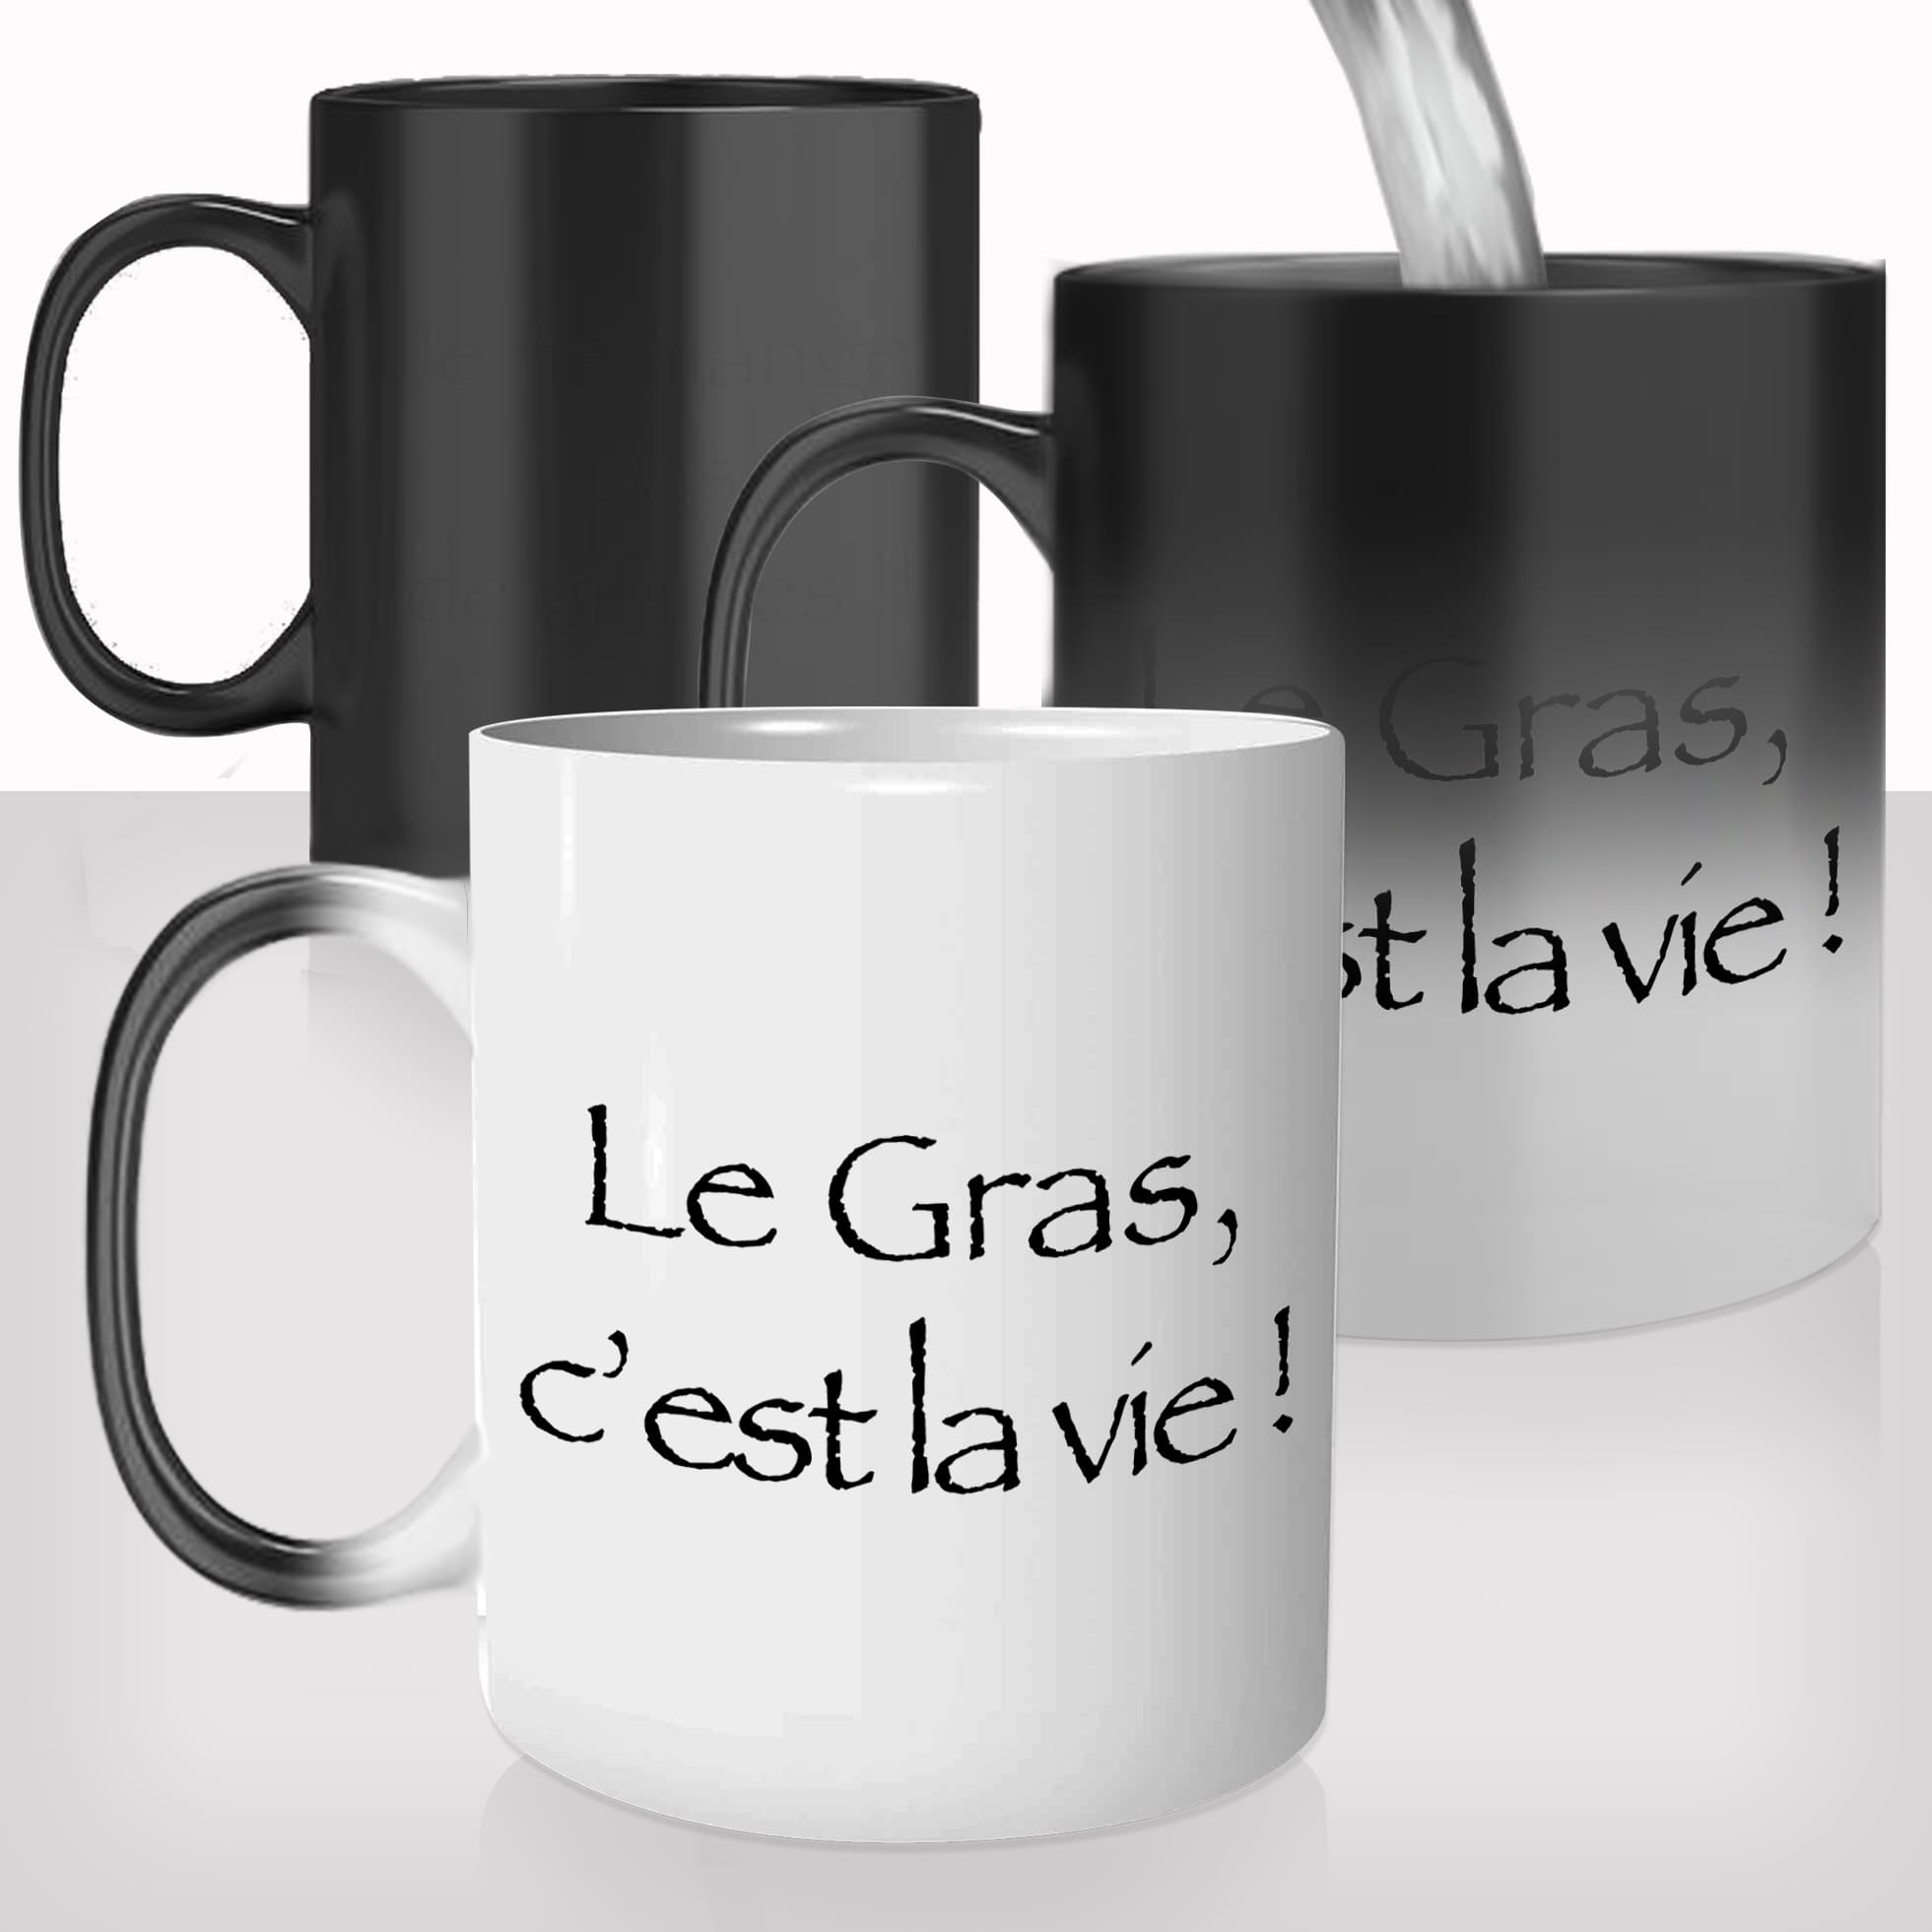 mug-magique-tasse-thermo-reactive-magic-série-kaamelott-francais-la-gras-c'est-la-vie-caradoc-regime-citation-drole-original-cadeau-fun